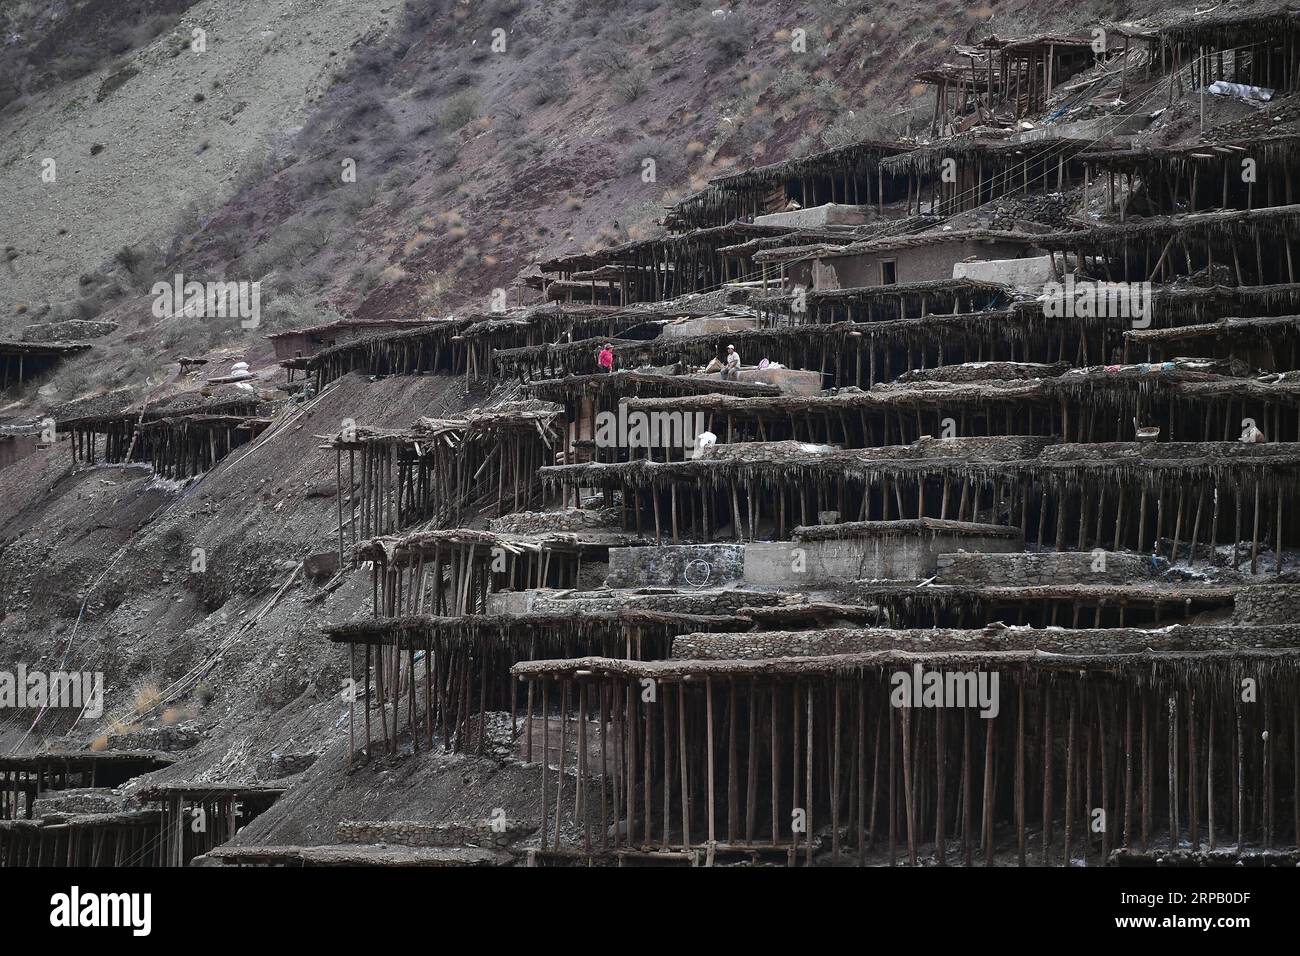 (190523) -- LHASSA, 23 mai 2019 (Xinhua) -- des villageois travaillent dans des champs salins dans le comté de Mangkam, dans la région autonome du Tibet du sud-ouest de la Chine, 22 mai 2019. Une ancienne technique de production de sel depuis la dynastie Tang (618-907) est bien conservée dans le comté de Mangkam. Les populations locales suivent une méthode de récolte du sel en recueillant les saumures des mines de sel et des étangs et en les évaporant au soleil jusqu'à cristallisation. (Xinhua/Li Xin) CHINE-TIBET-MANGKAM-PRODUCTION DE SEL (CN) PUBLICATIONxNOTxINxCHN Banque D'Images